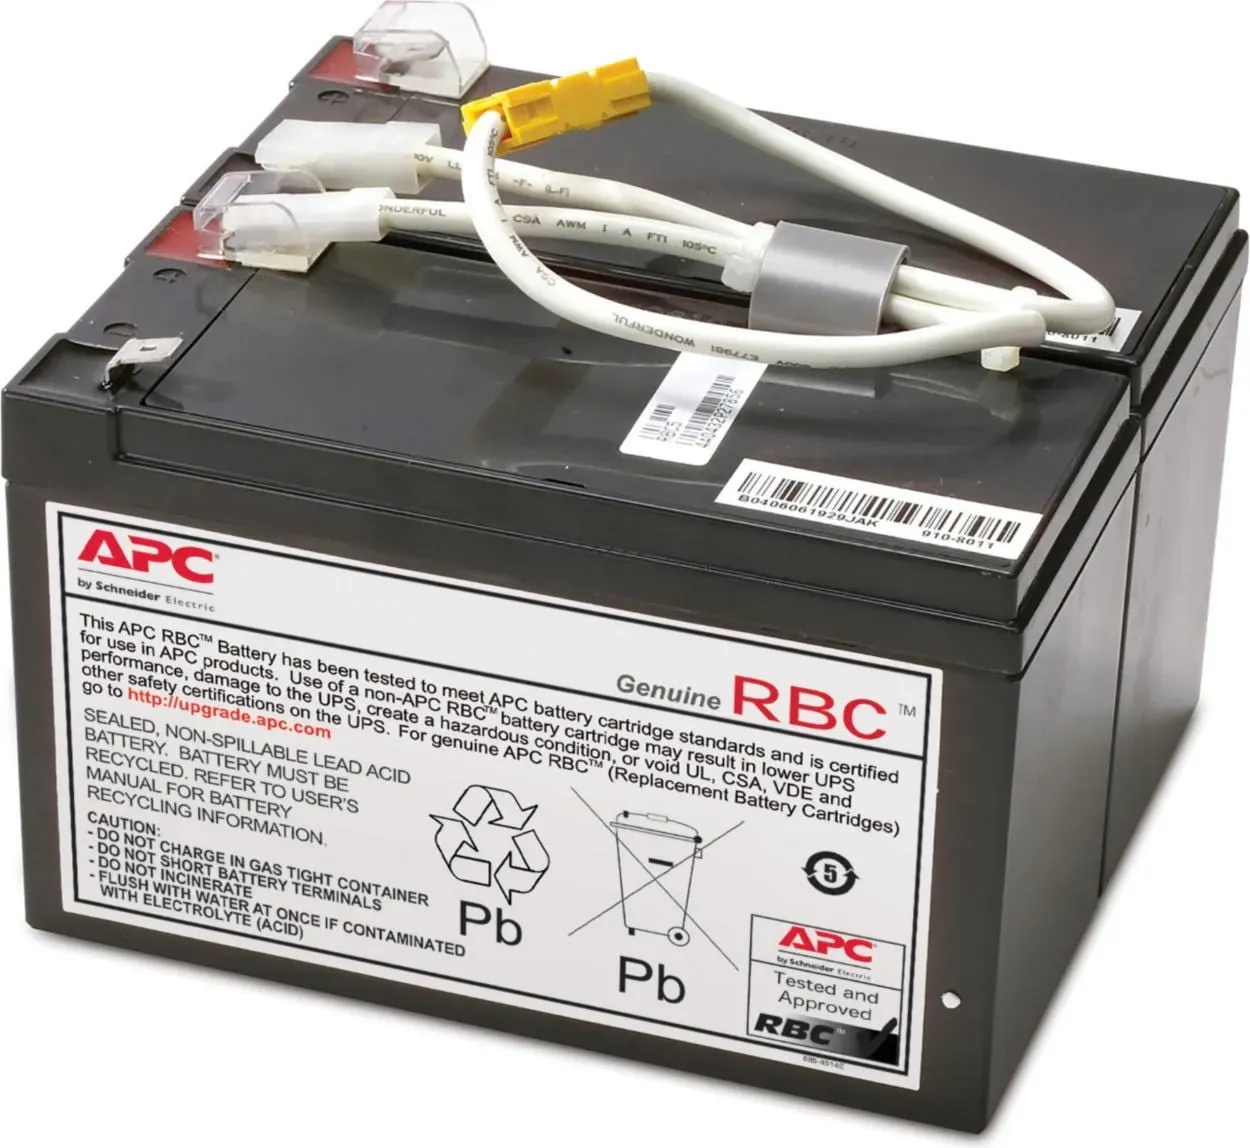 Bild von Replacement Battery Cartridge #5 (RBC5)